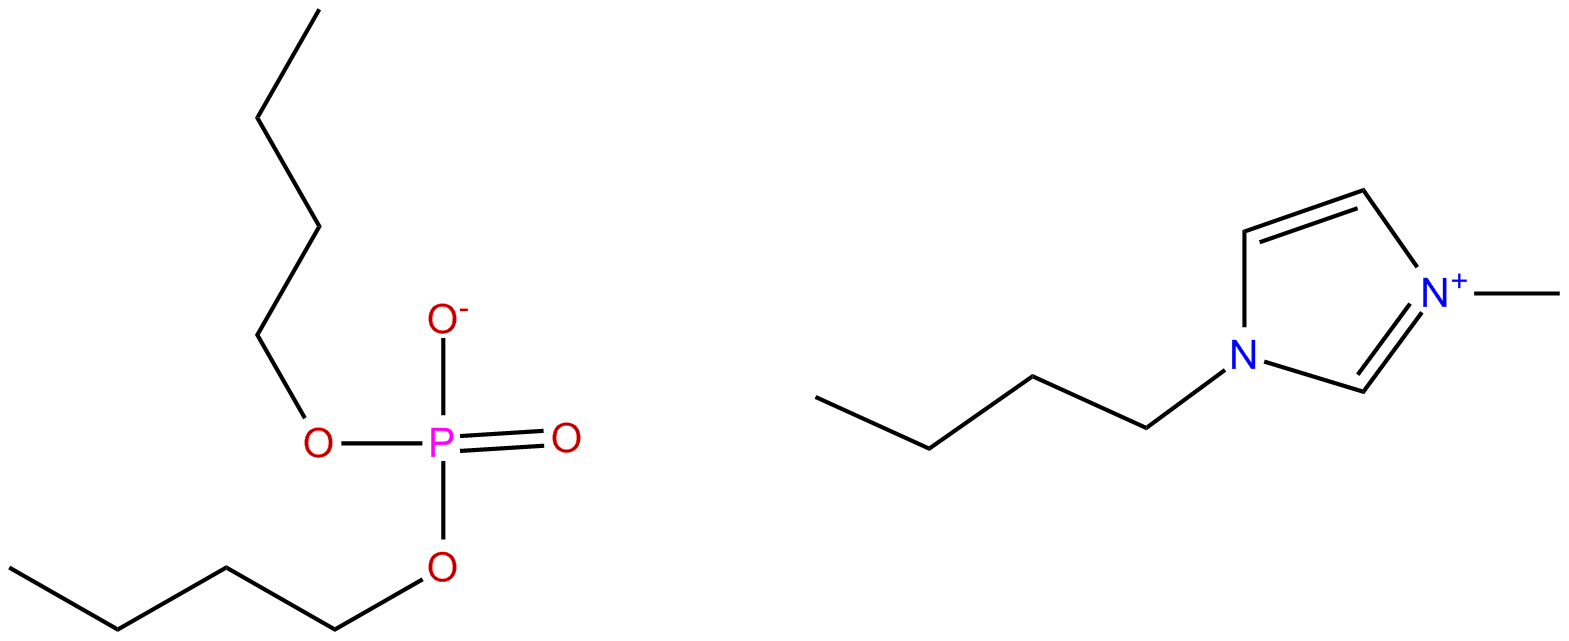 Image of 1-butyl-3-methylimidazolium dibutylphosphate